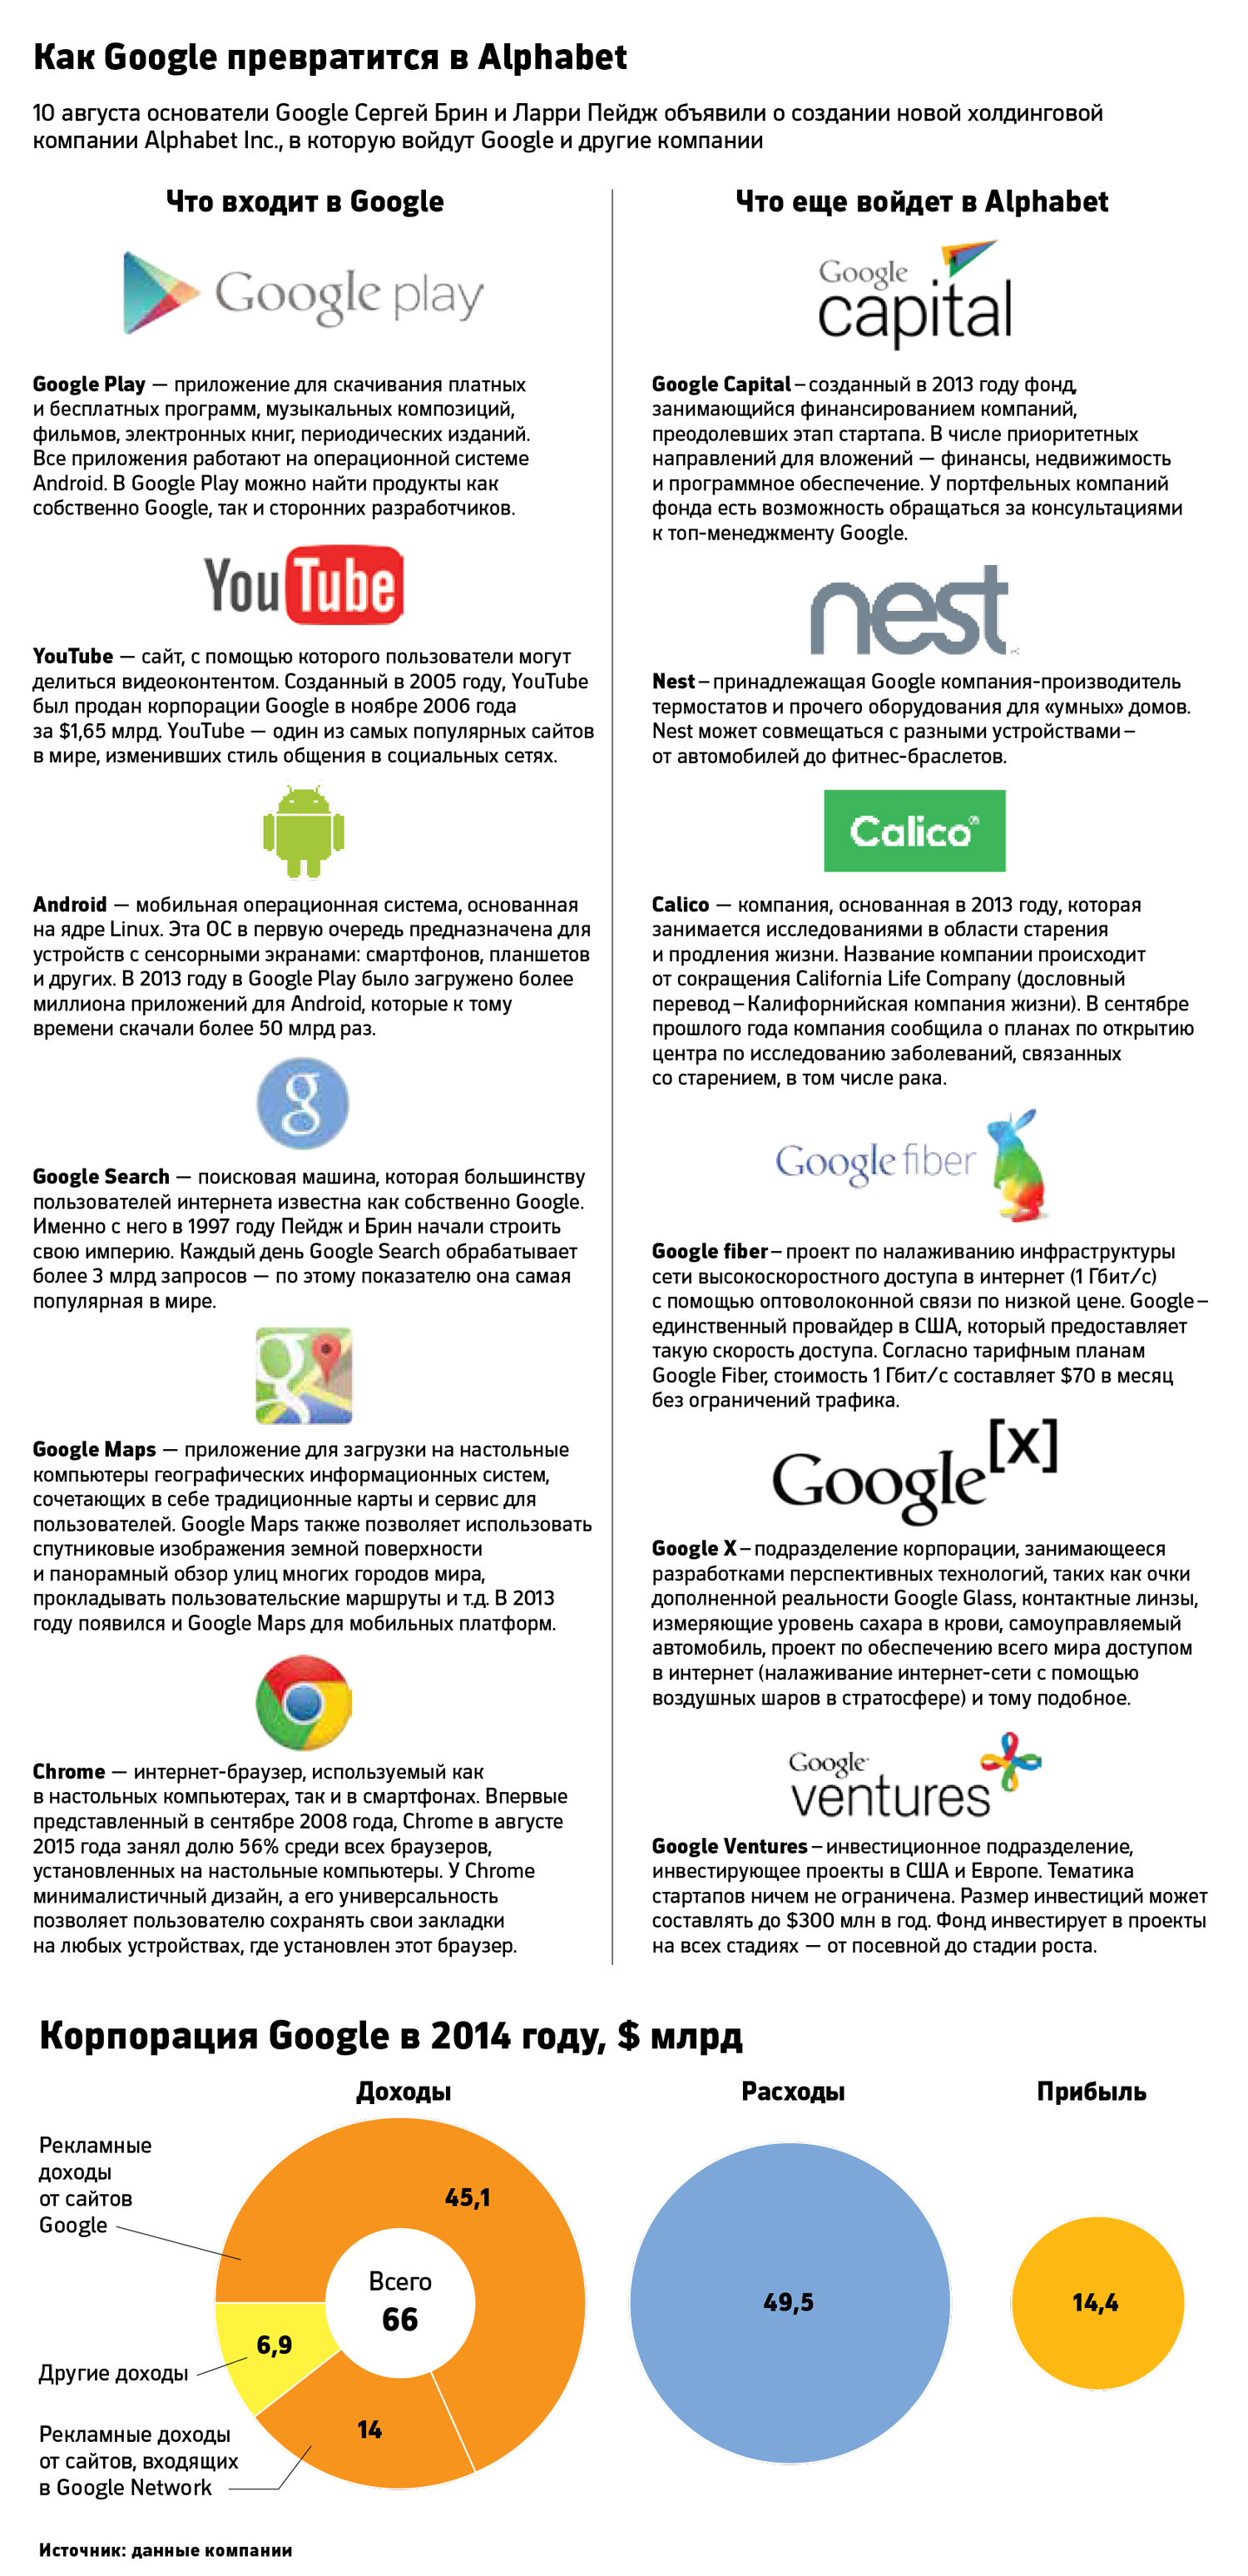 Бизнес от А до Я: зачем Google впишет свои активы в холдинг Alphabet